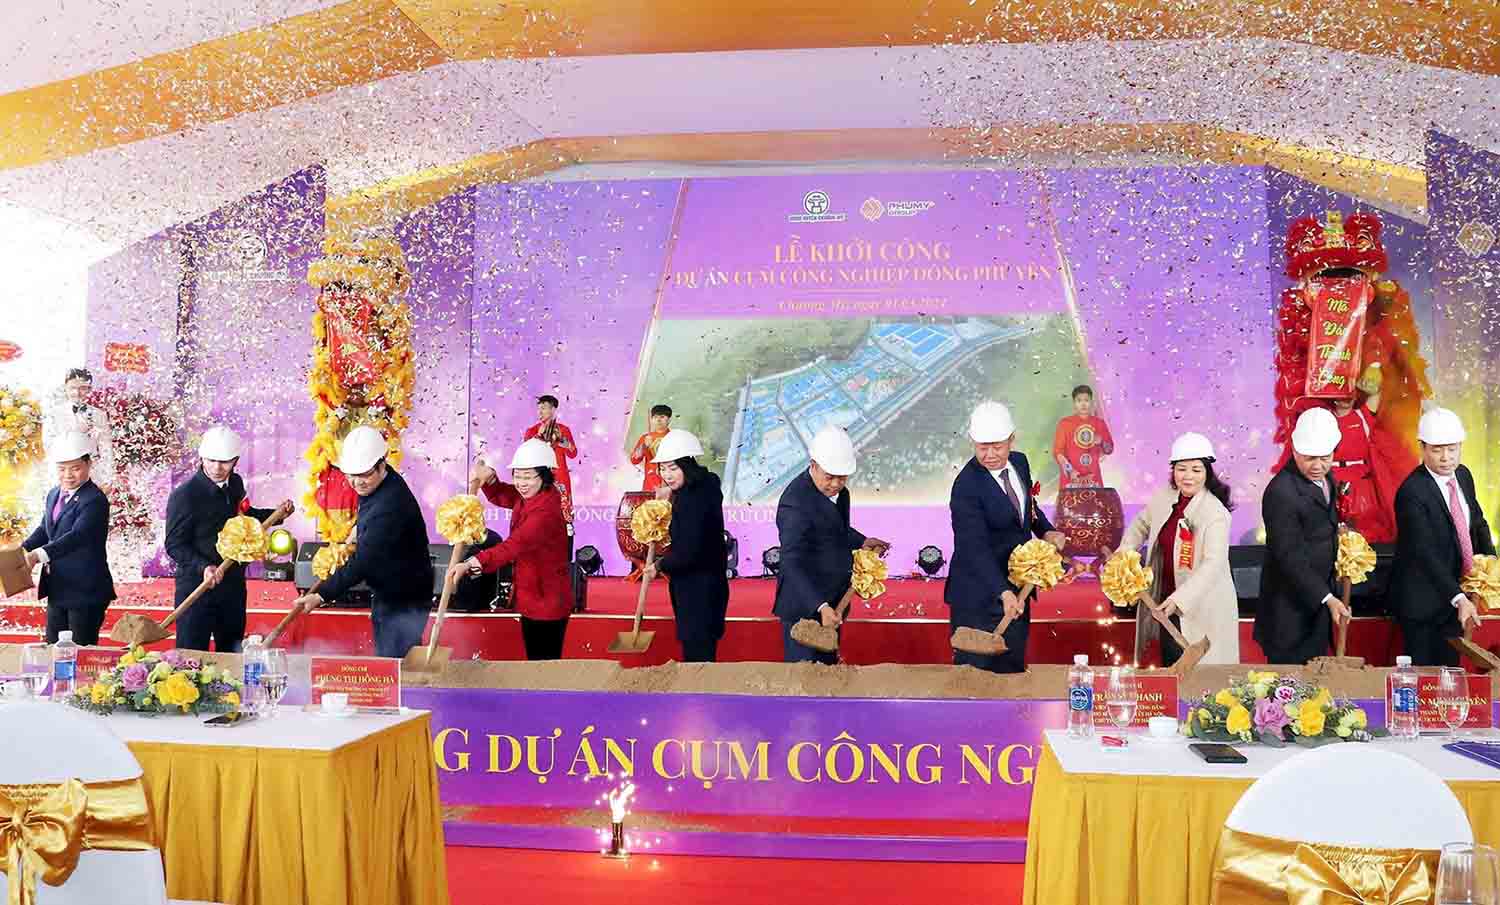 Chủ tịch UBND TP Hà Nội Trần Sỹ Thanh và các đại biểu thực hiện nghi lễ khởi công Cụm công nghiệp Đông Phú Yên. Ảnh: Kim Nhuệ